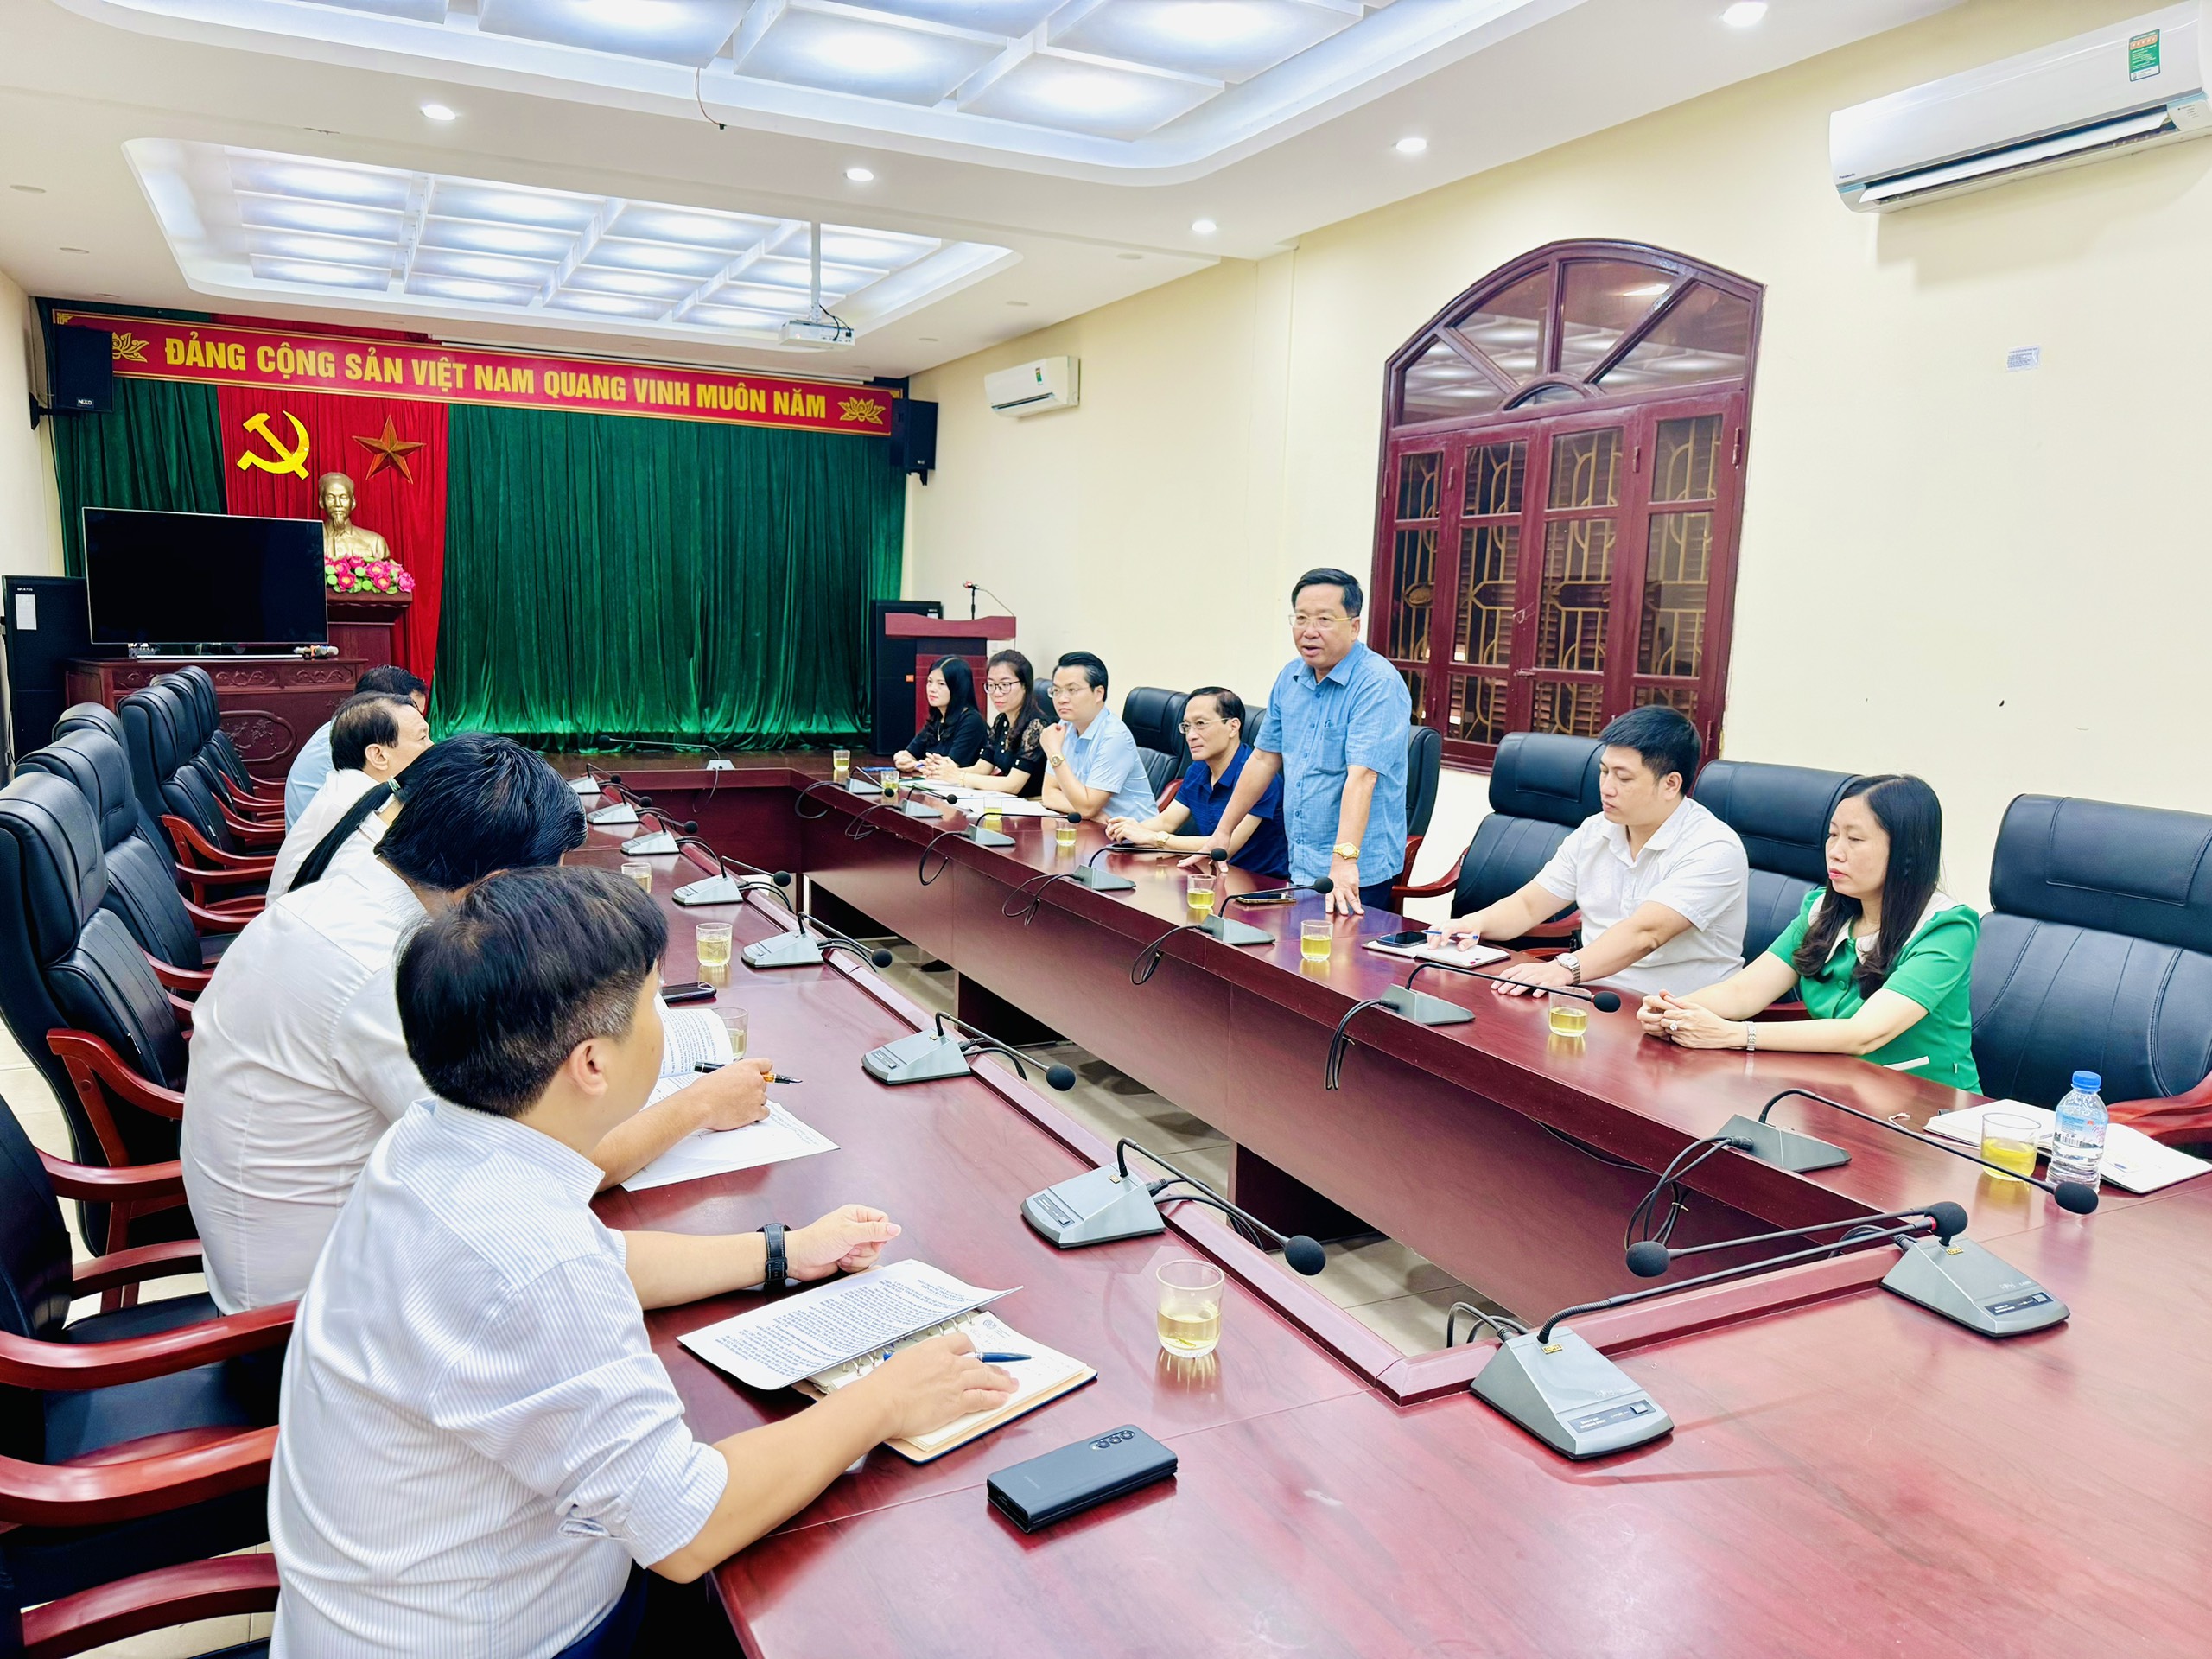 Trao đổi, học tập kinh nghiệm xúc tiến đầu tư, kinh nghiệm quy hoạch để xây dựng, phát triển các khu công nghiệp theo mô hình khu công nghiệp - đô thị - dịch vụ tại tỉnh Bắc Ninh.